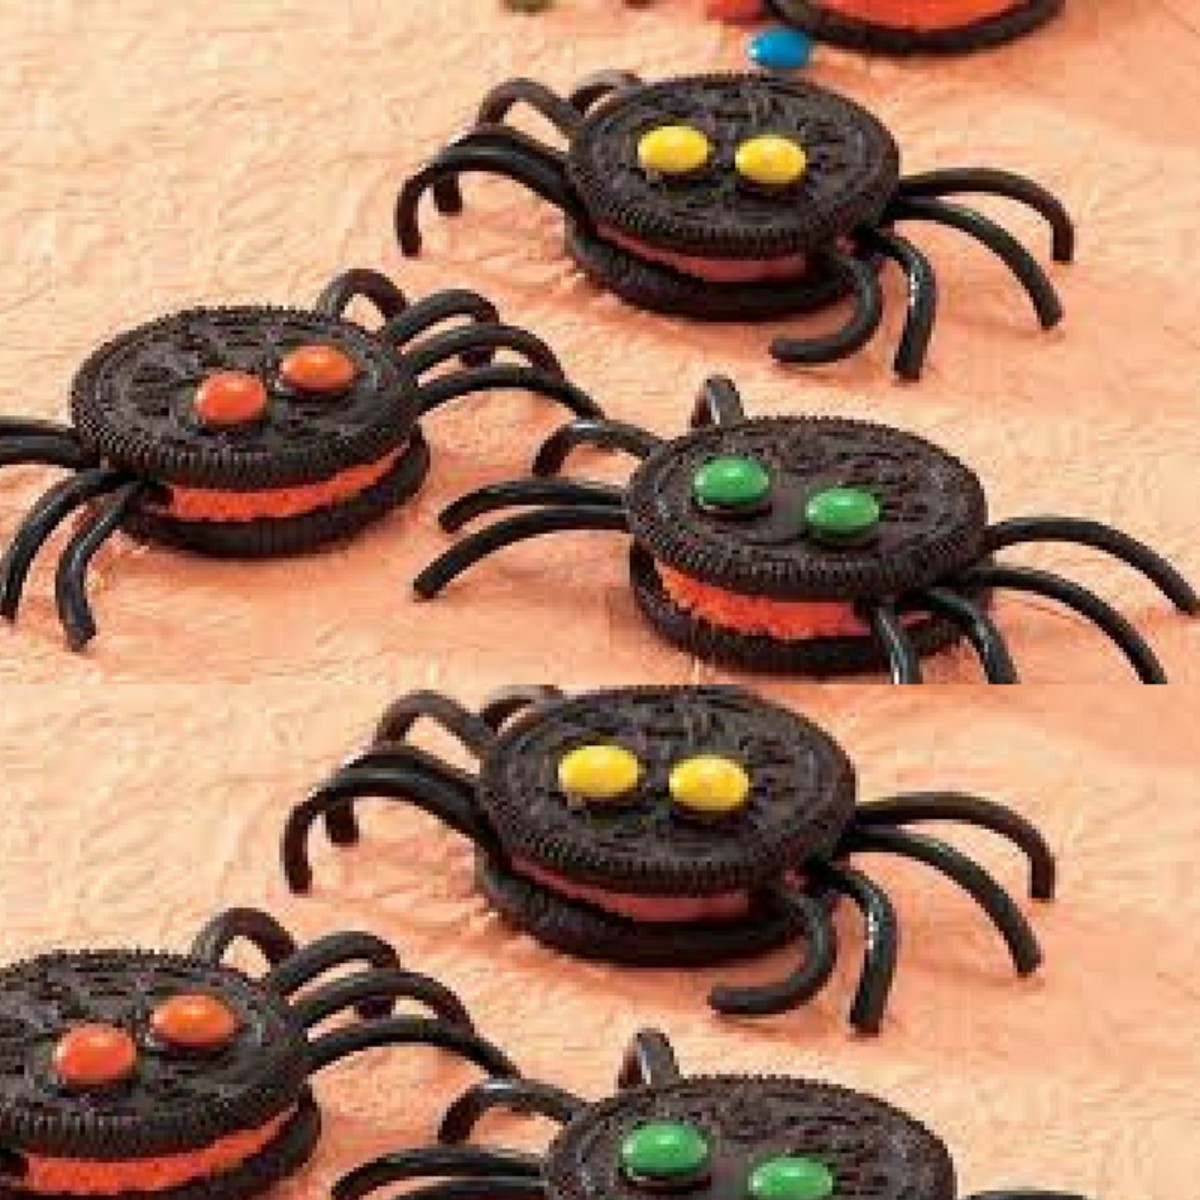 Oreo spider cookies